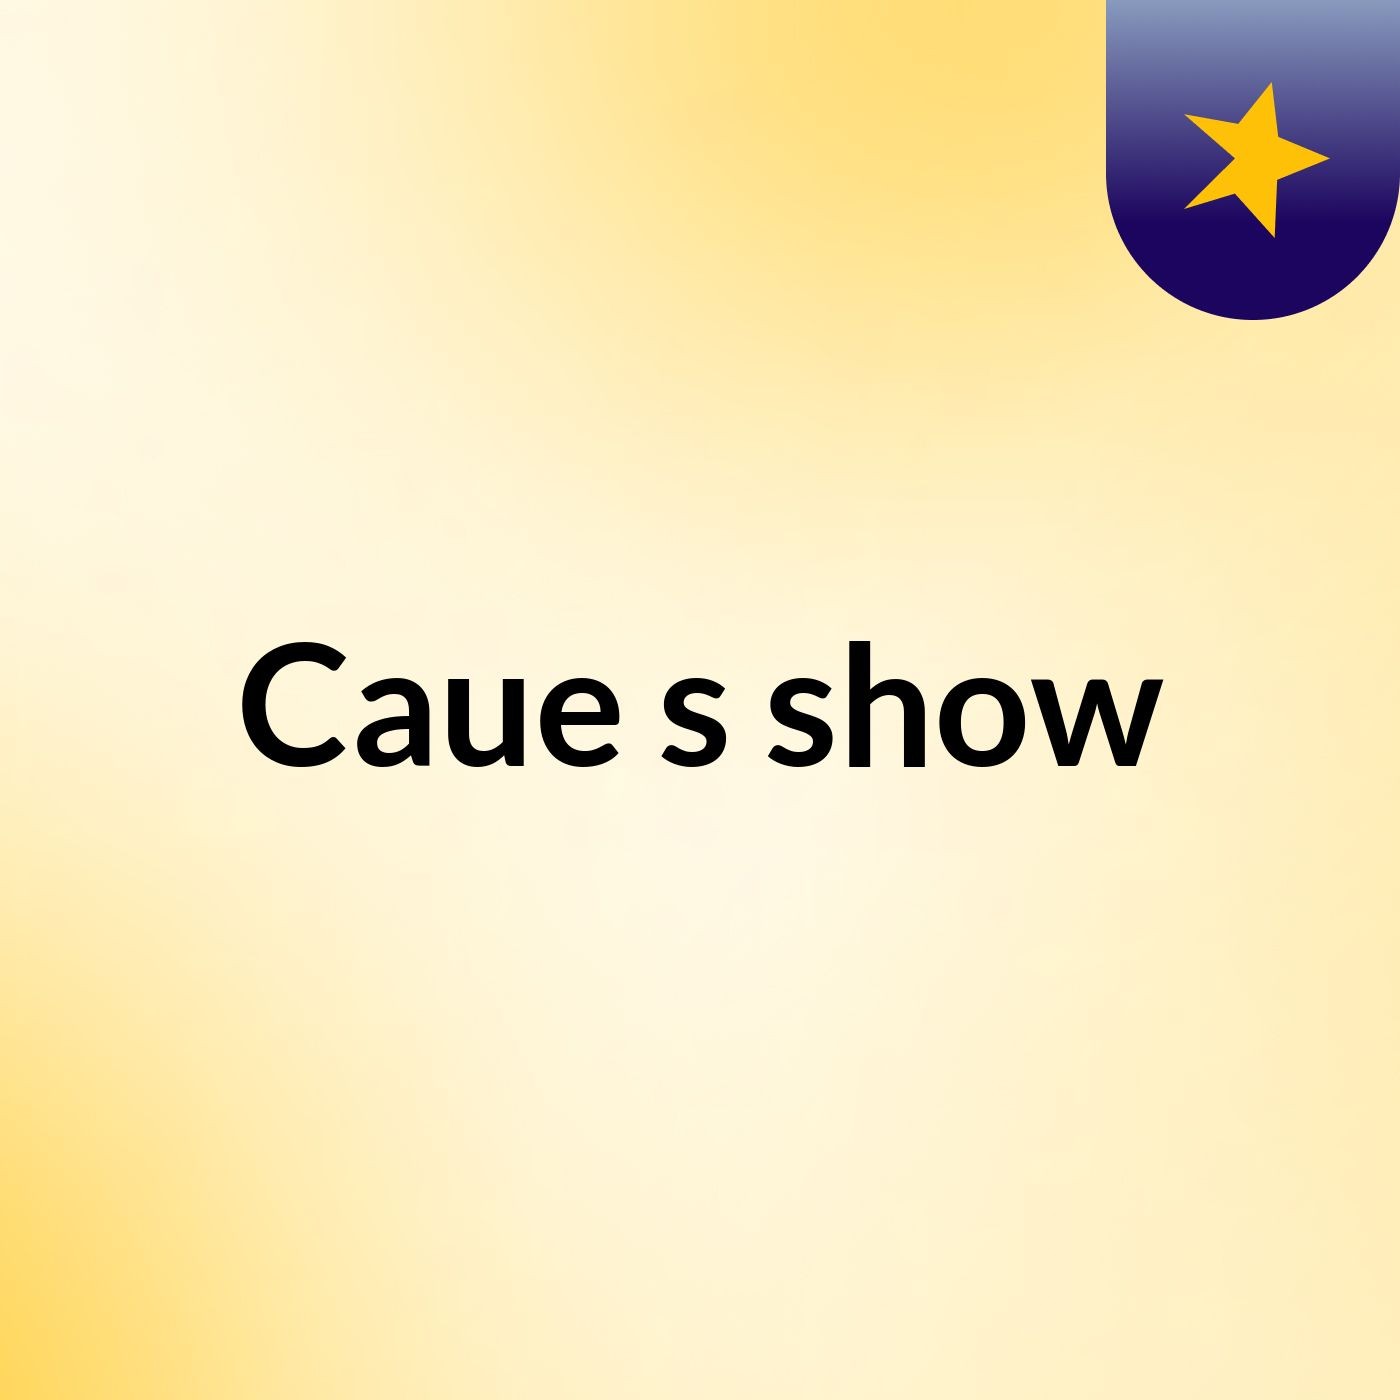 Caue's show